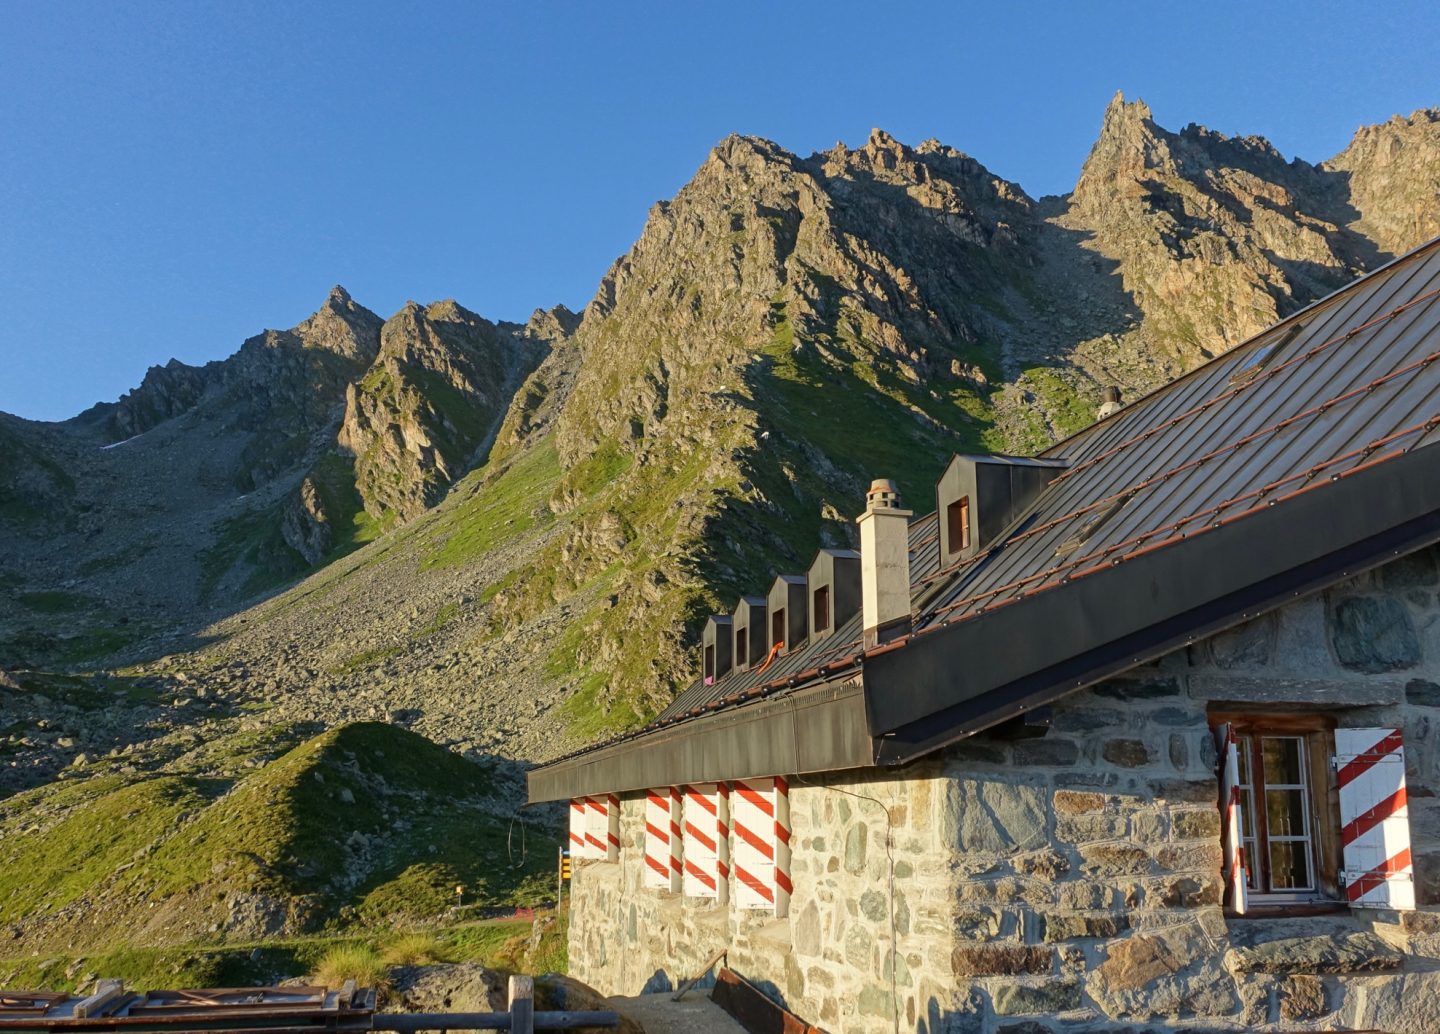 A mountain hut on the mont blanc to matterhorn trek